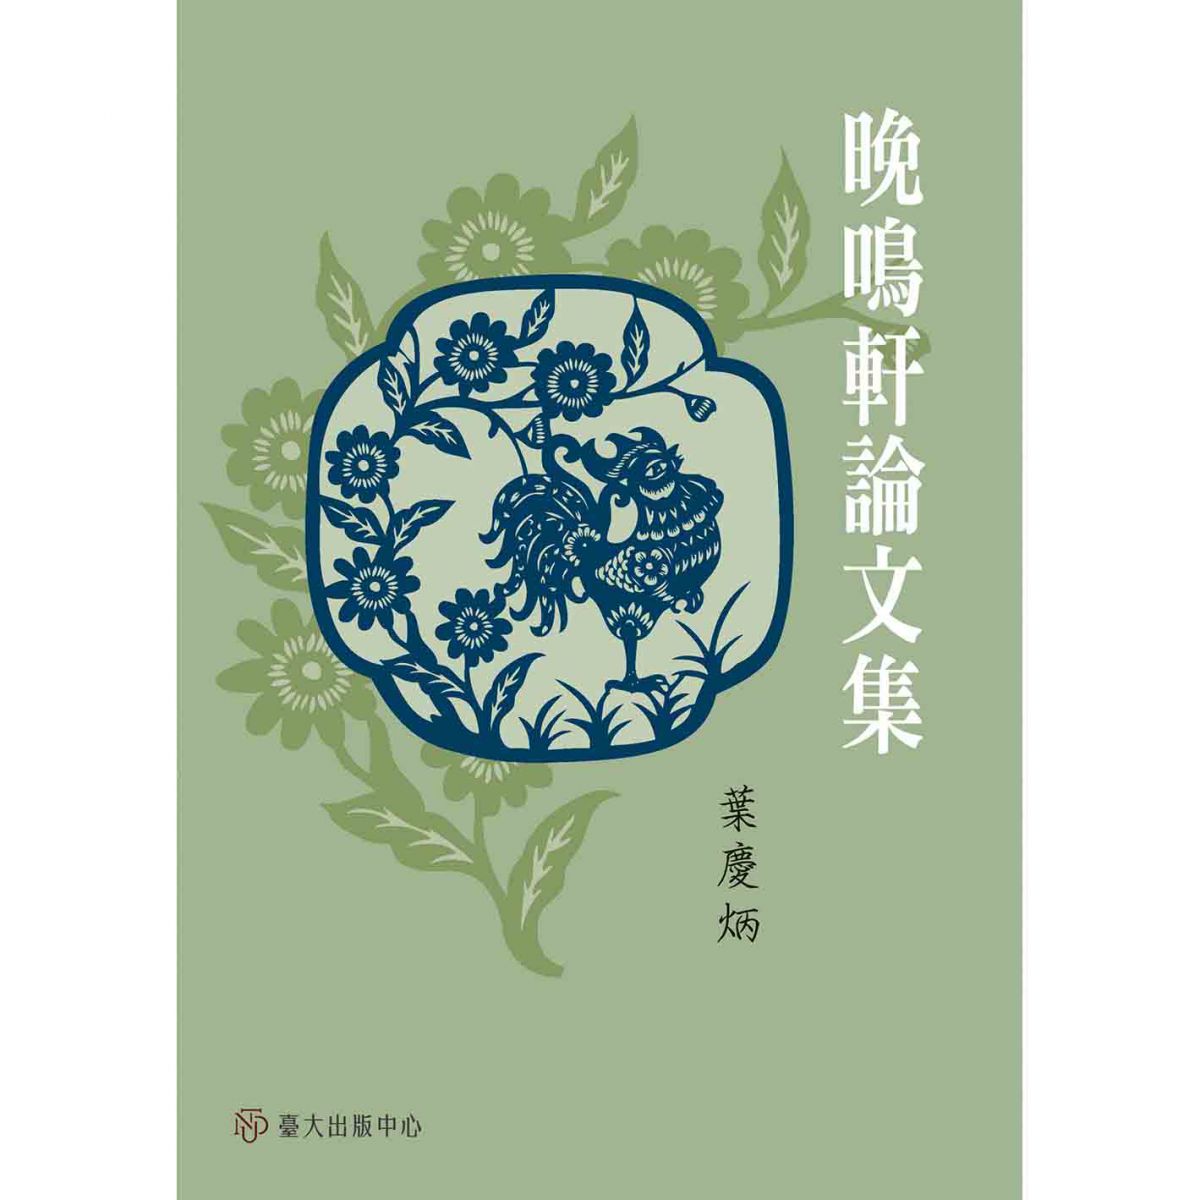 《晚鳴軒論文集》出版，收錄葉慶炳教授二十四章文學論文